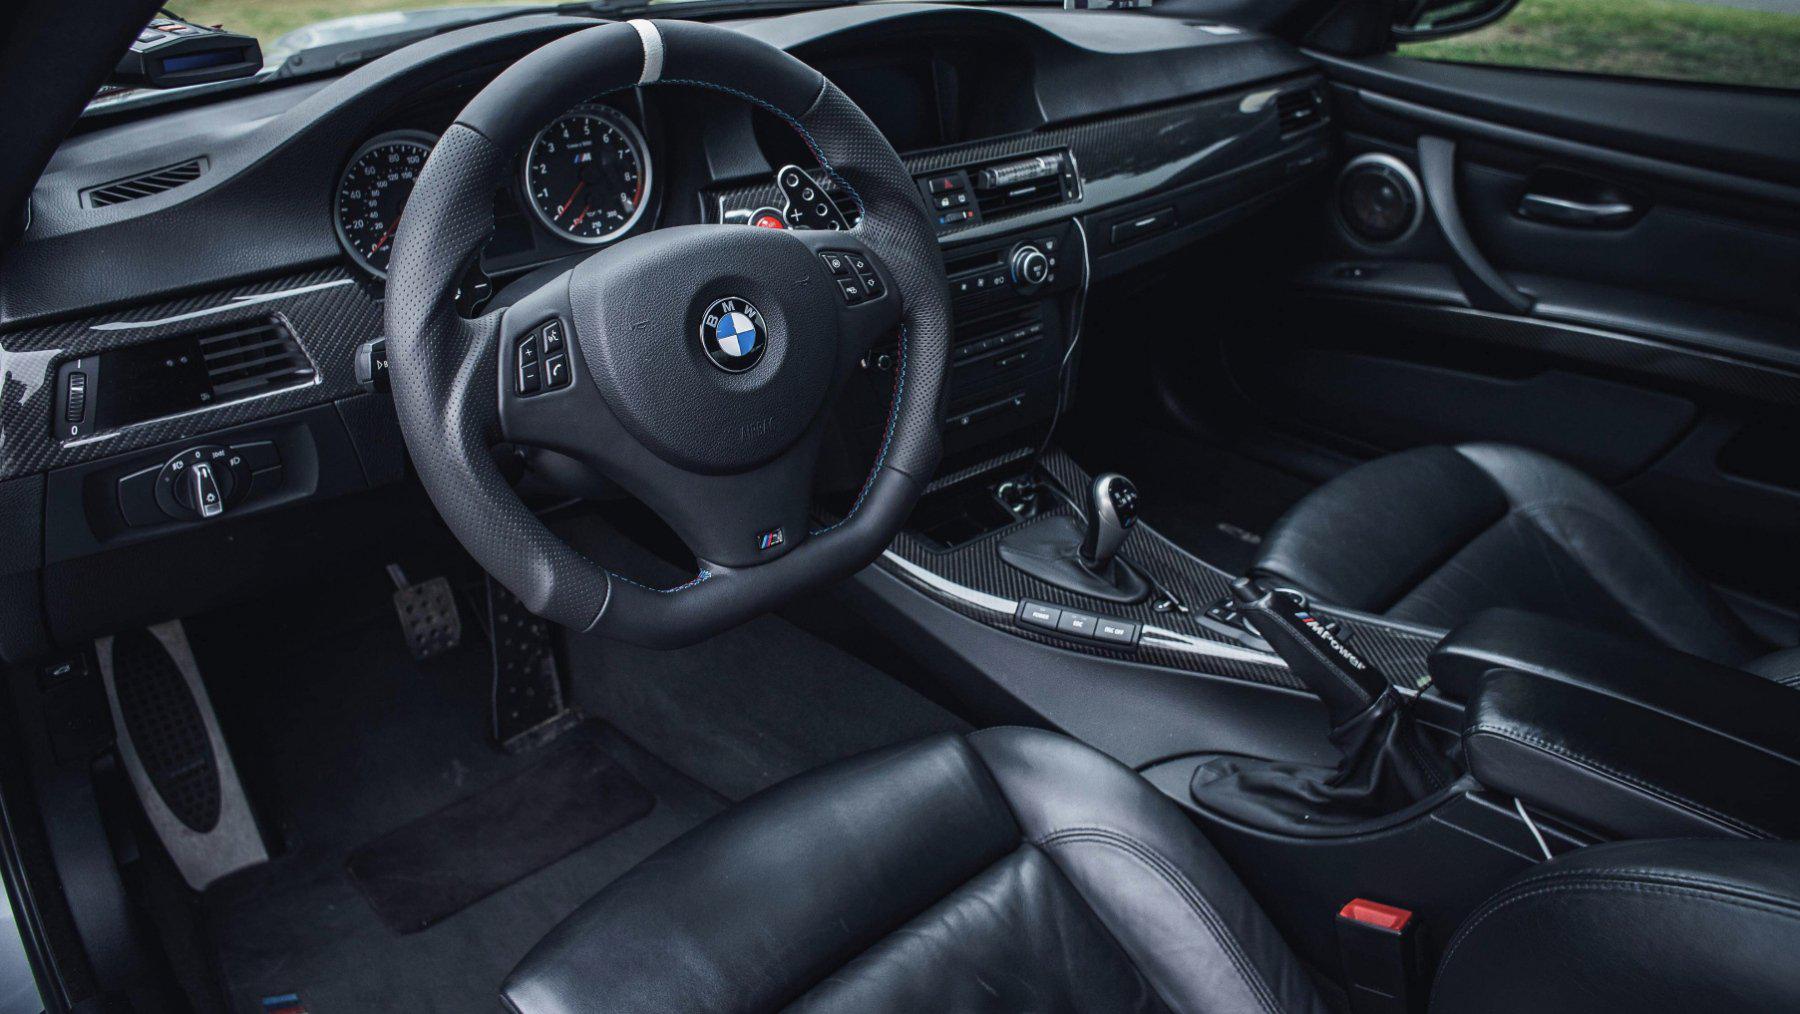 Full Custom Steering Wheel - BMW E Chassis